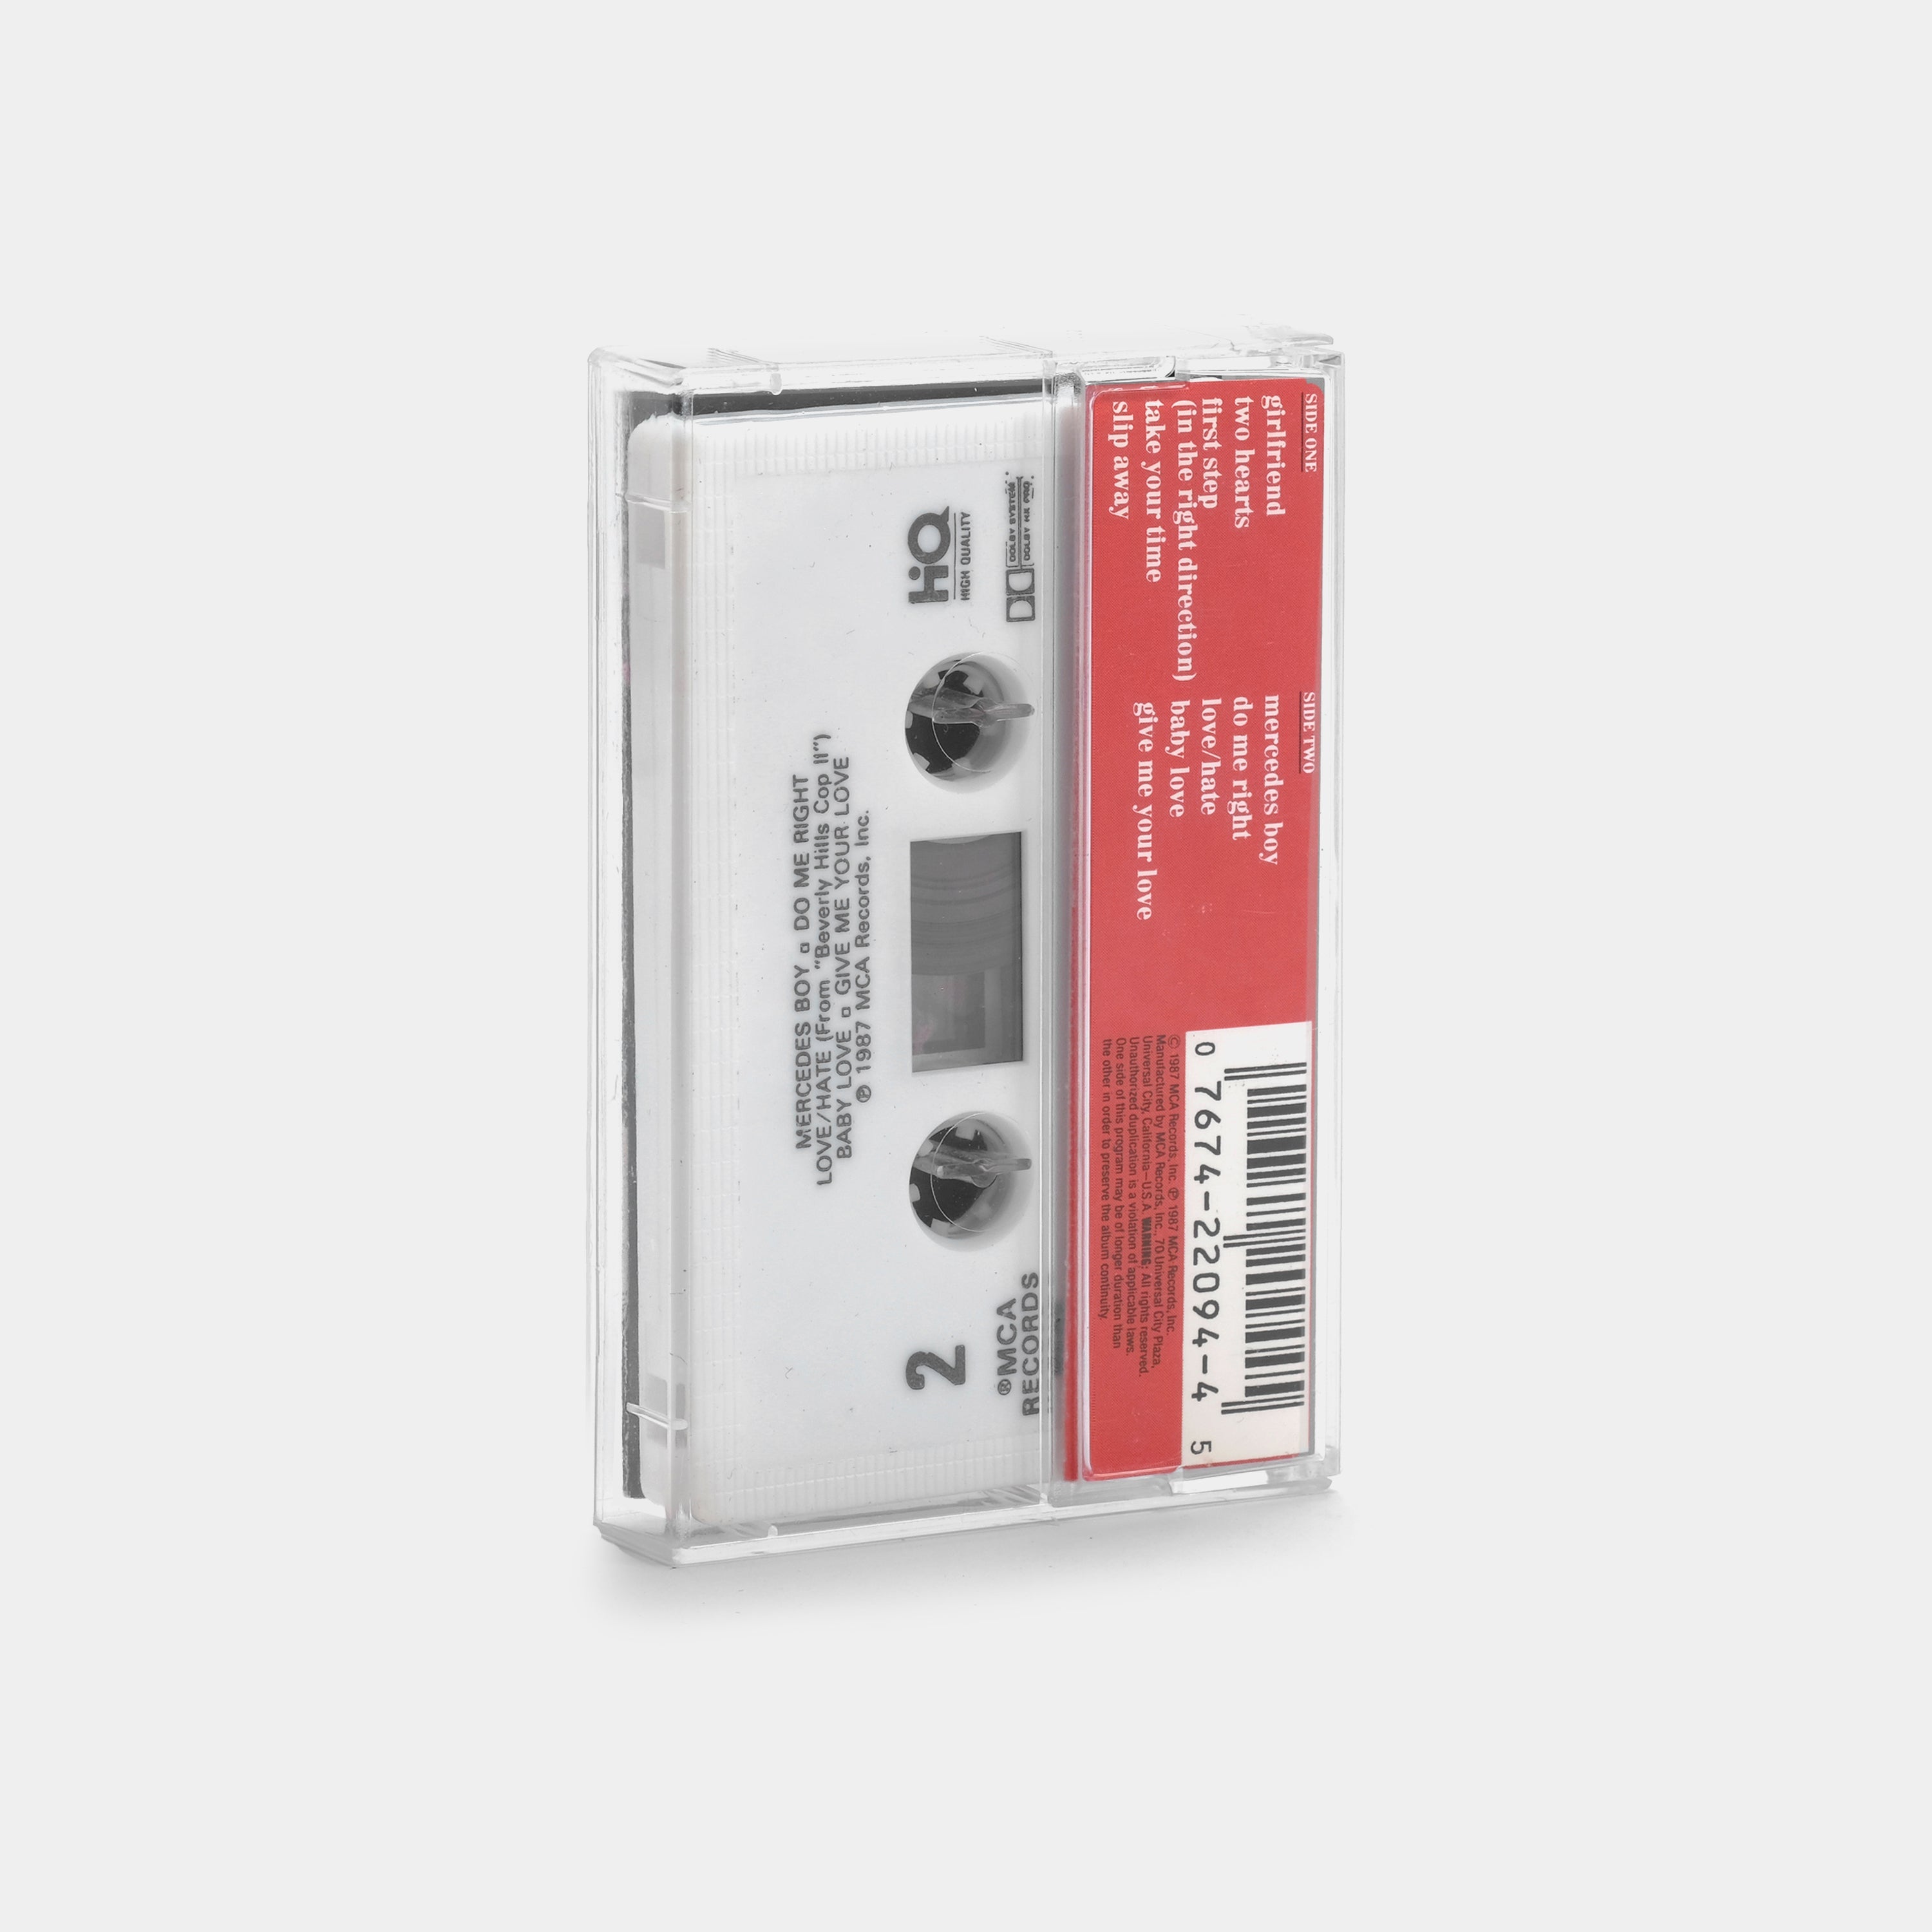 Pebbles - Pebbles Cassette Tape